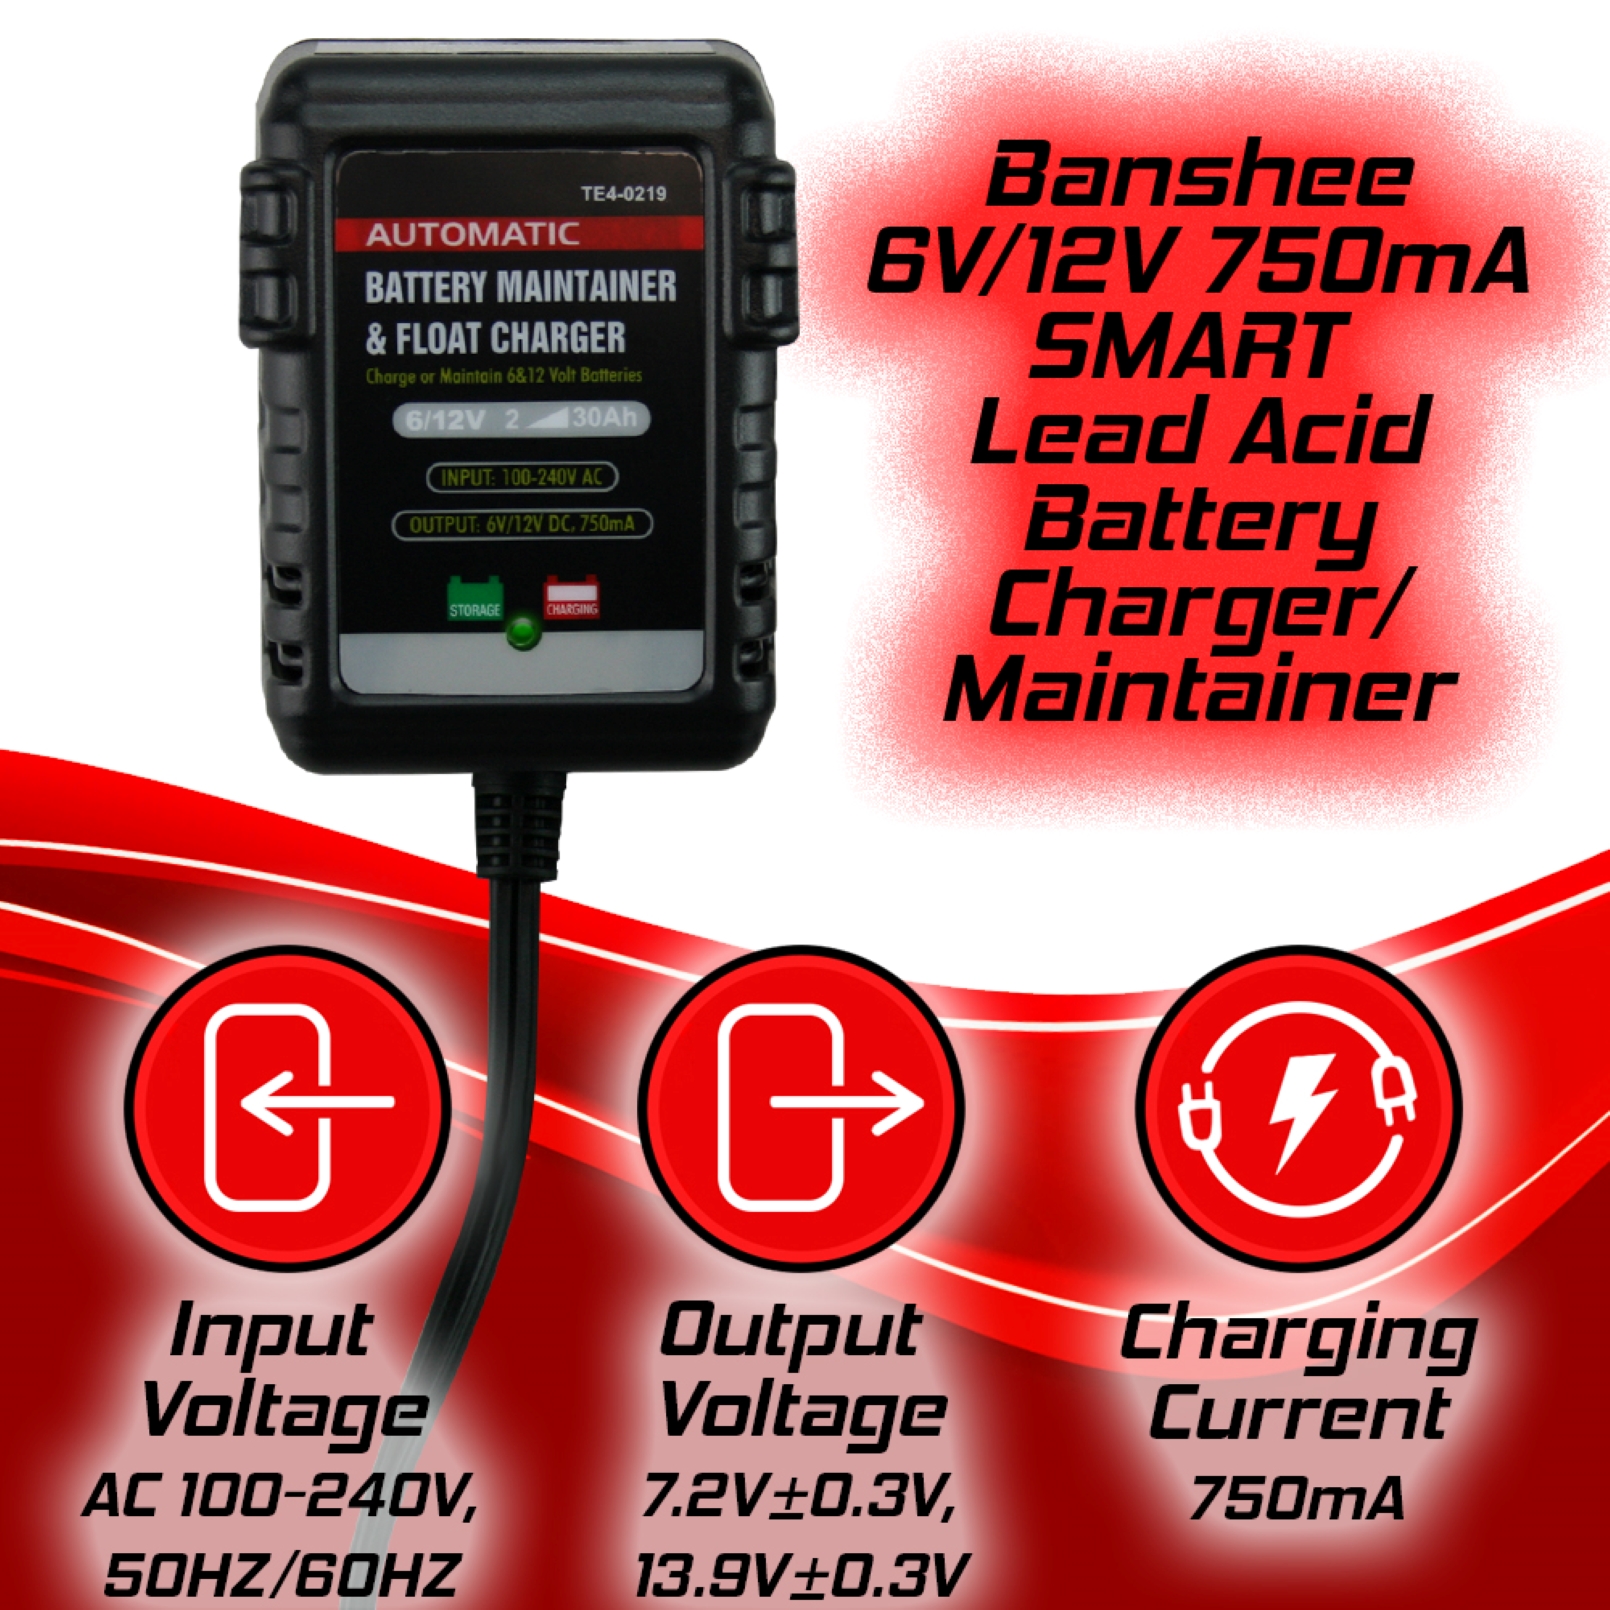 Banshee .75Amp Battery Charger Maintainer for 6V, 12V, SLA, AGM and Gel Batteries